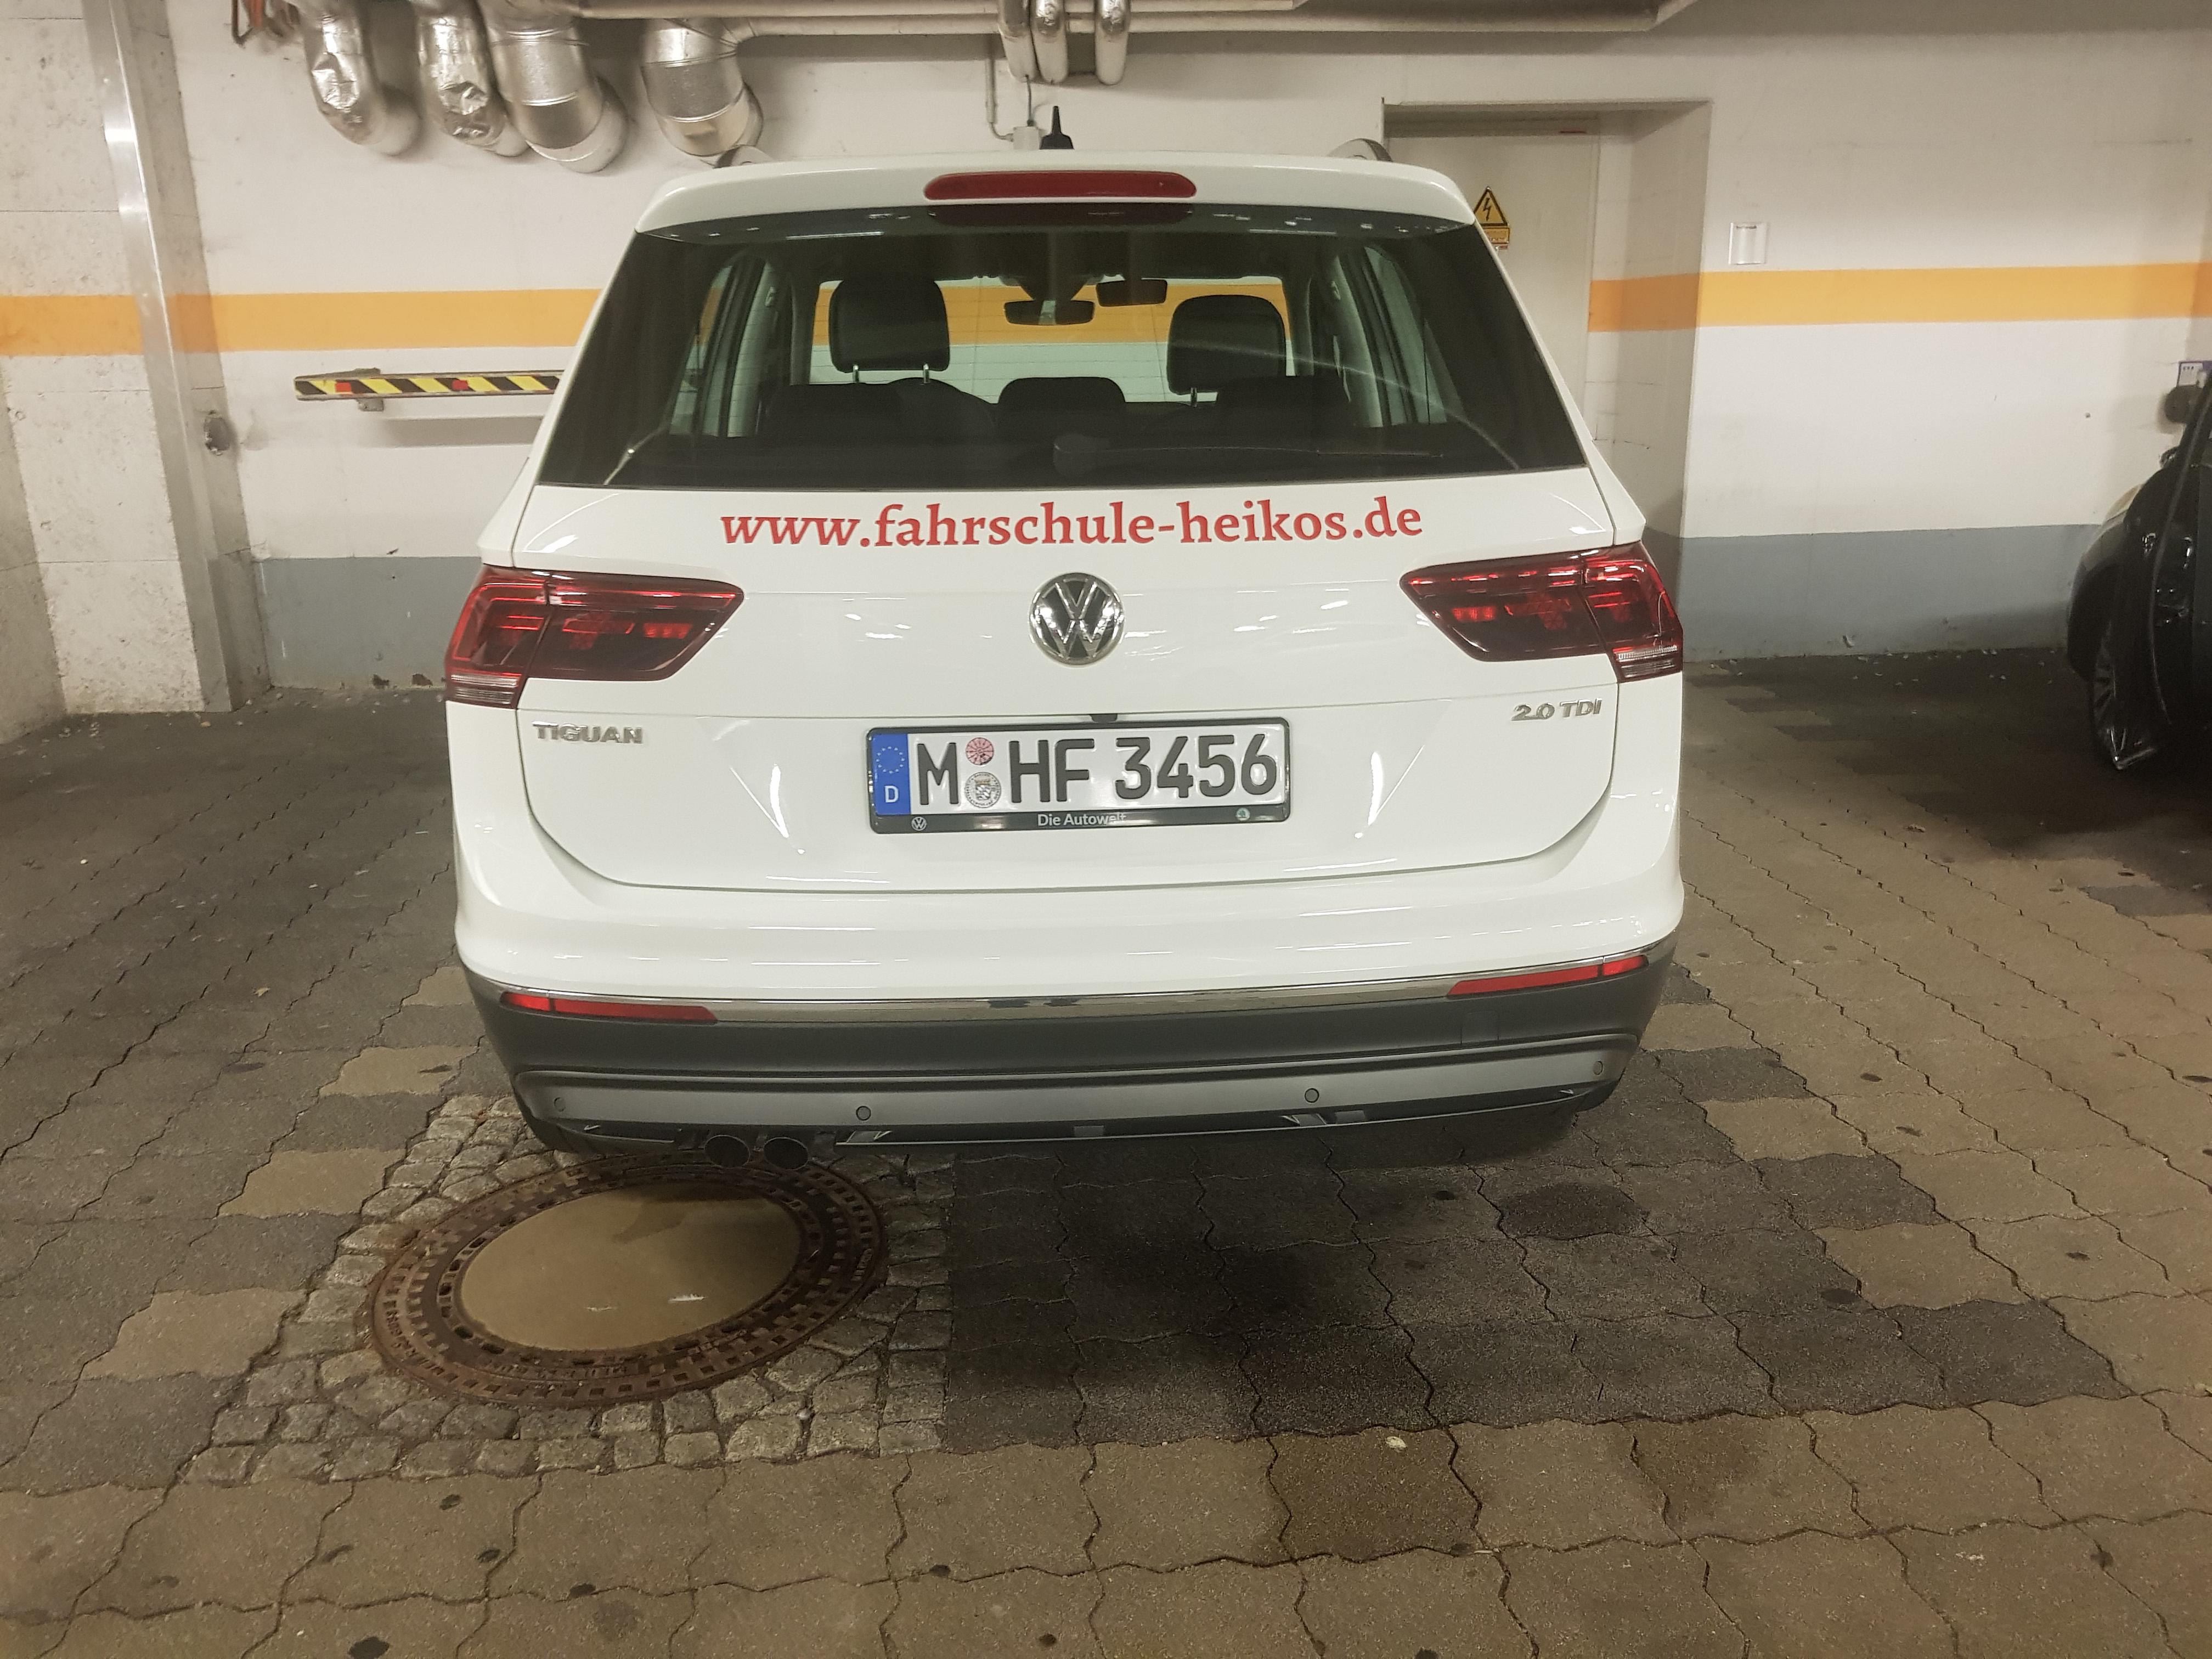 Kundenbild groß 15 Heiko's Fahrschule | Fahrtraining Führerschein Auto | Perlach München